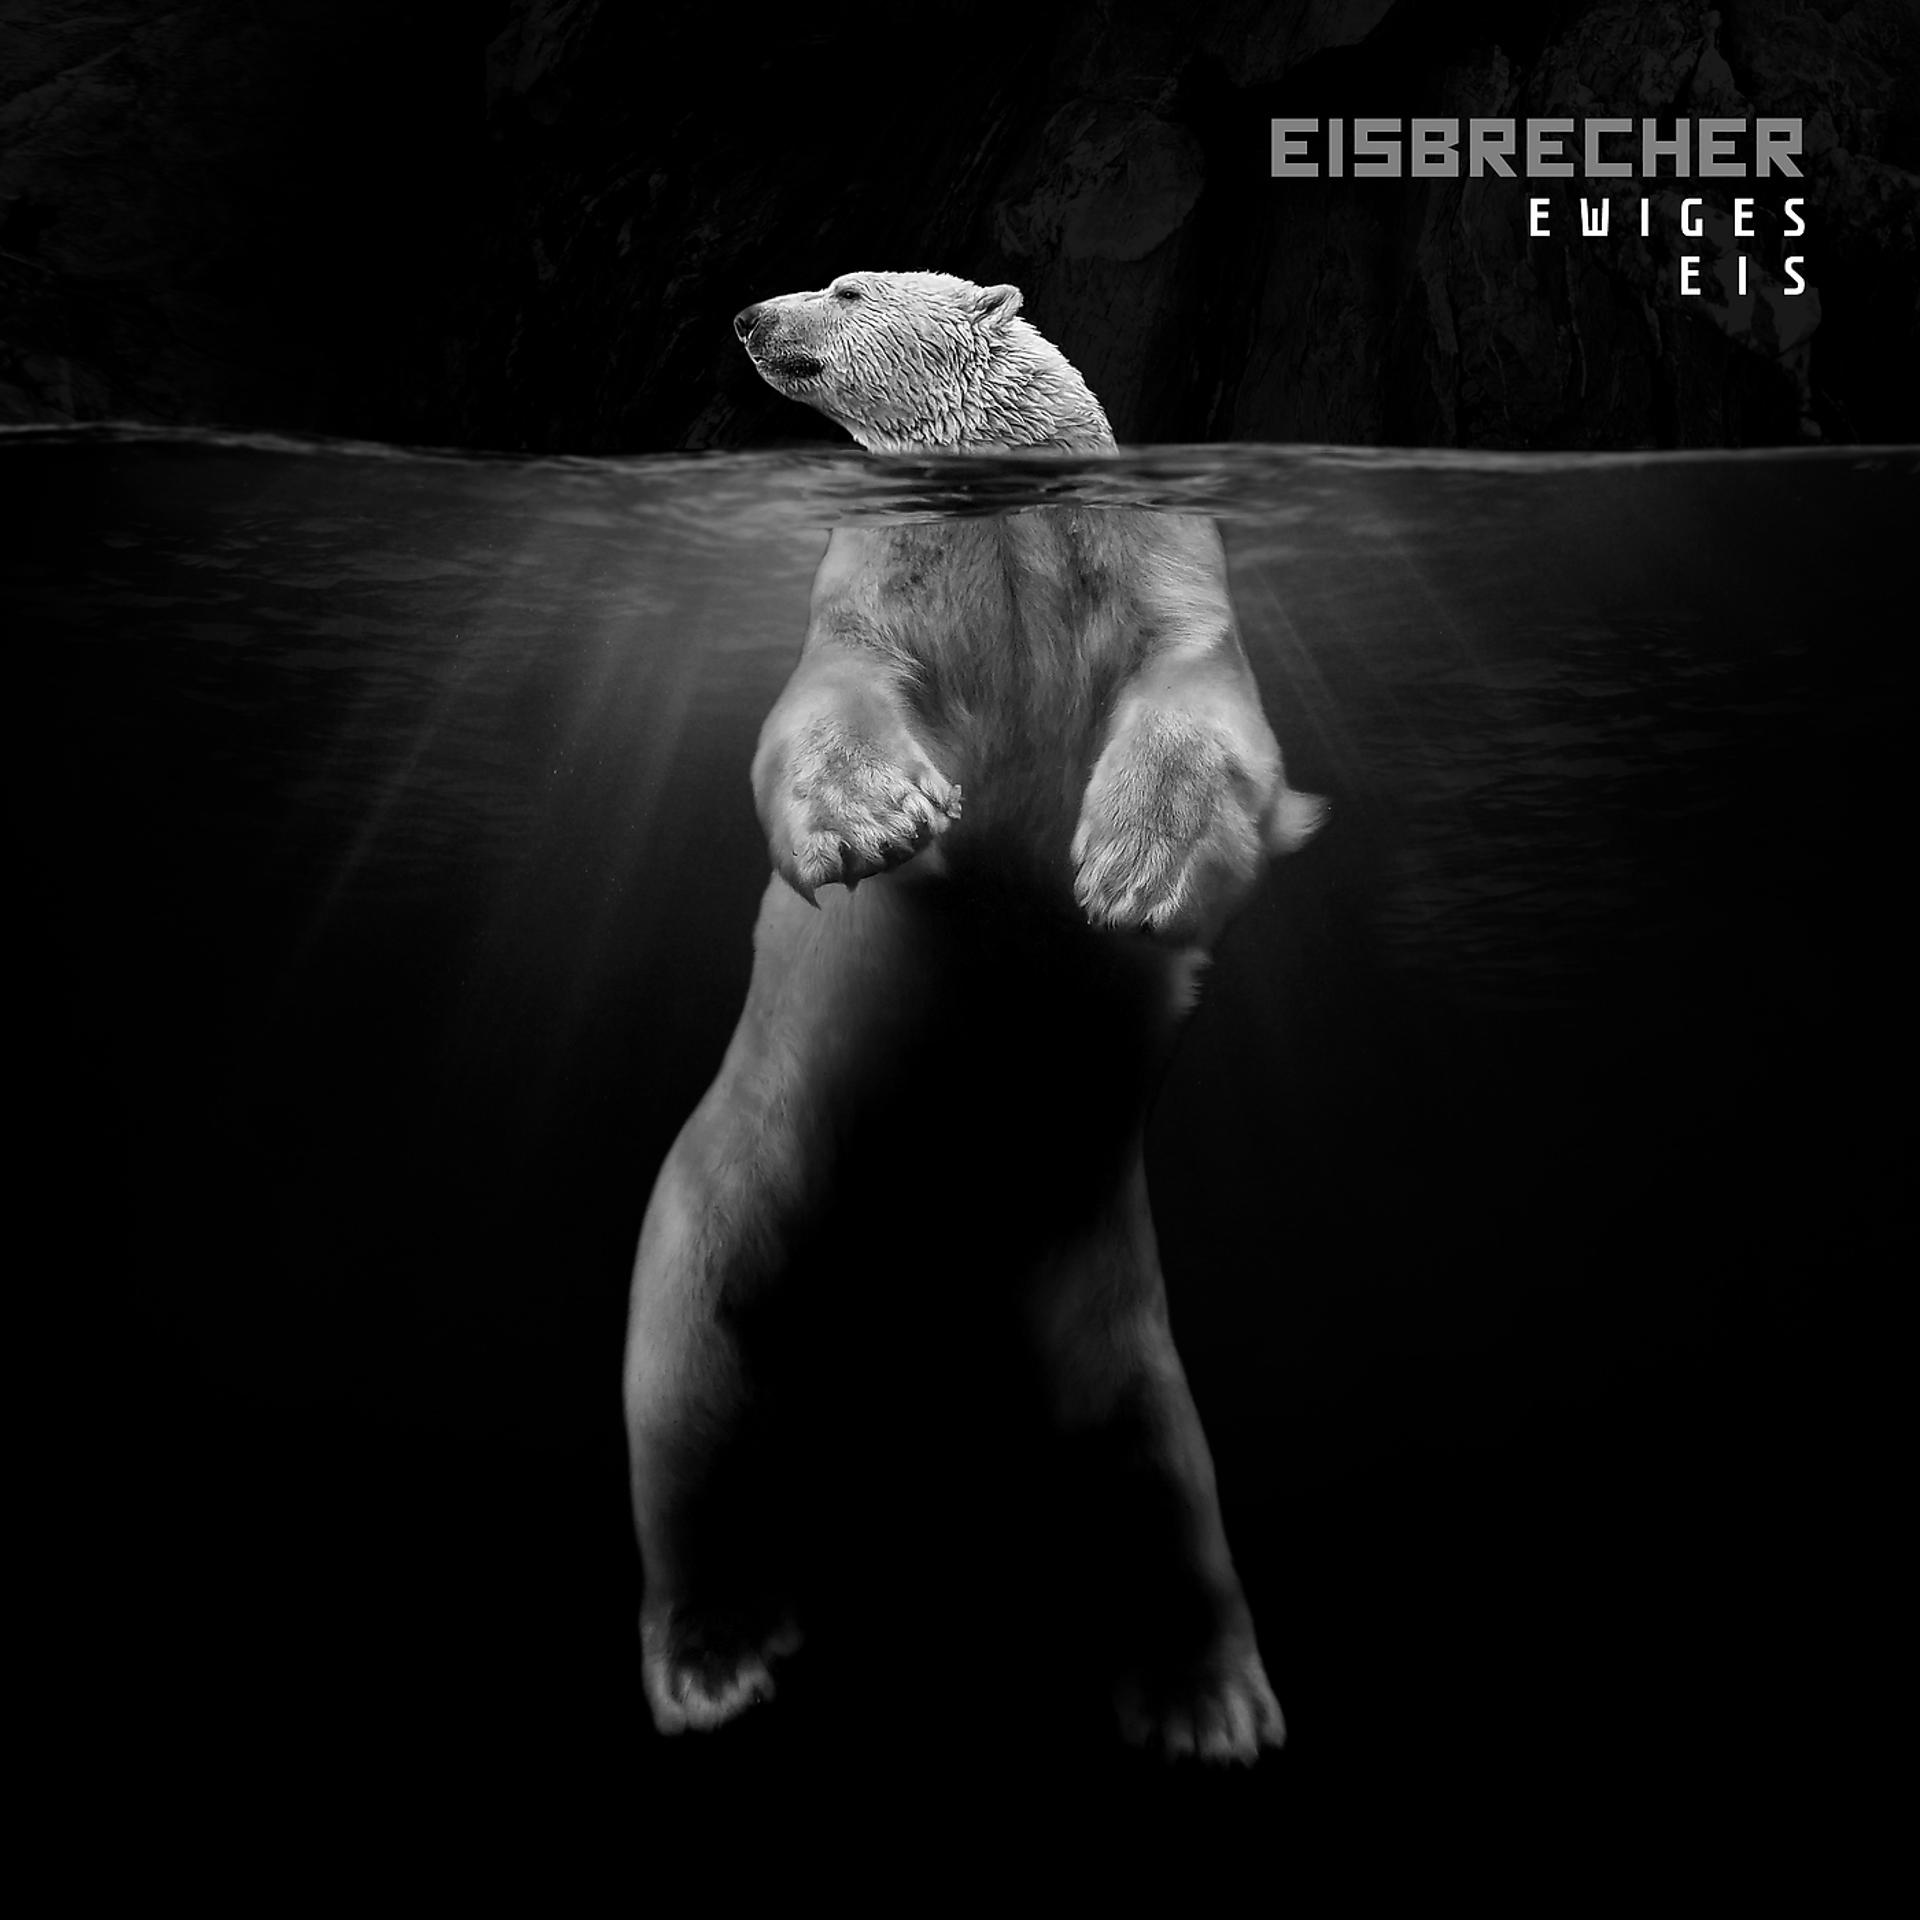 Eisbrecher rot wie. Альбом ewiges Eis - 15 Jahre Eisbrecher Eisbrecher. Eisbrecher обложка. Eisbrecher обложки альбомов. Группа Eisbrecher альбомы.